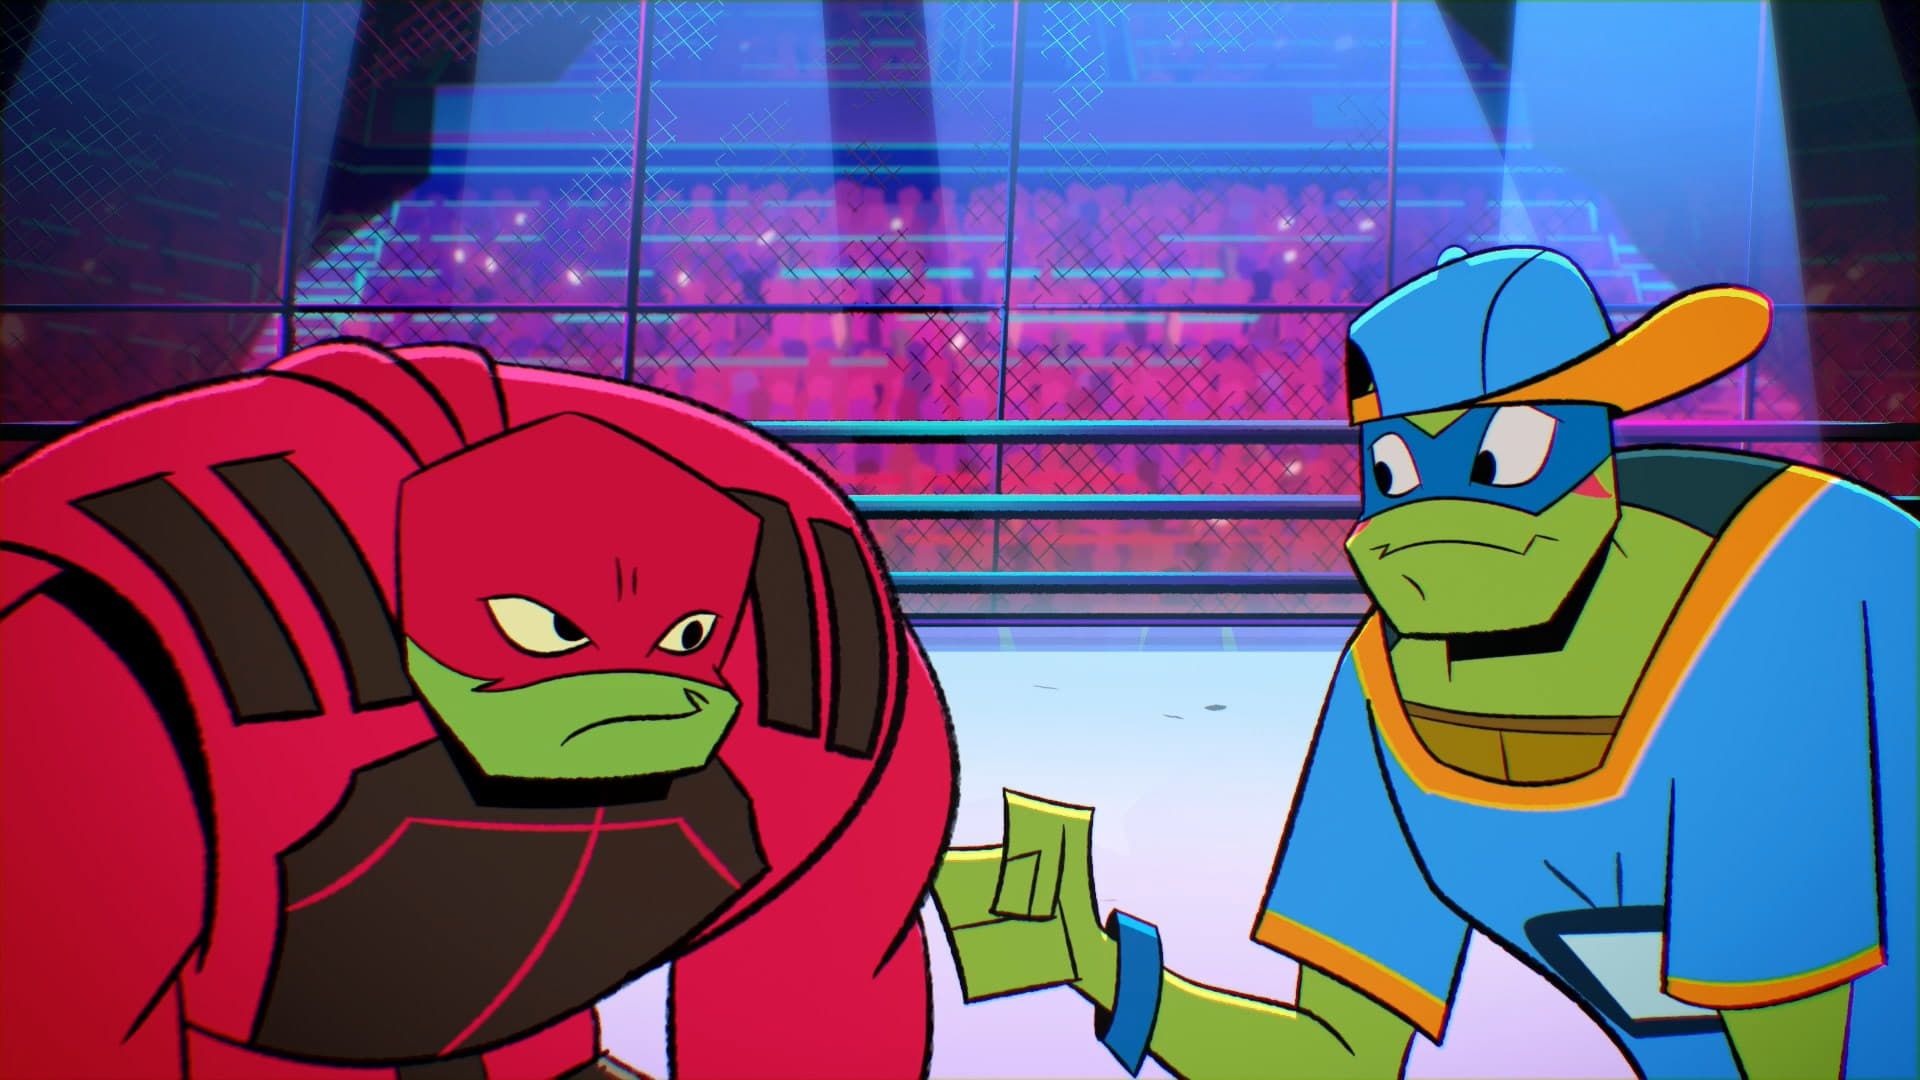 Rise of the Teenage Mutant Ninja Turtles background